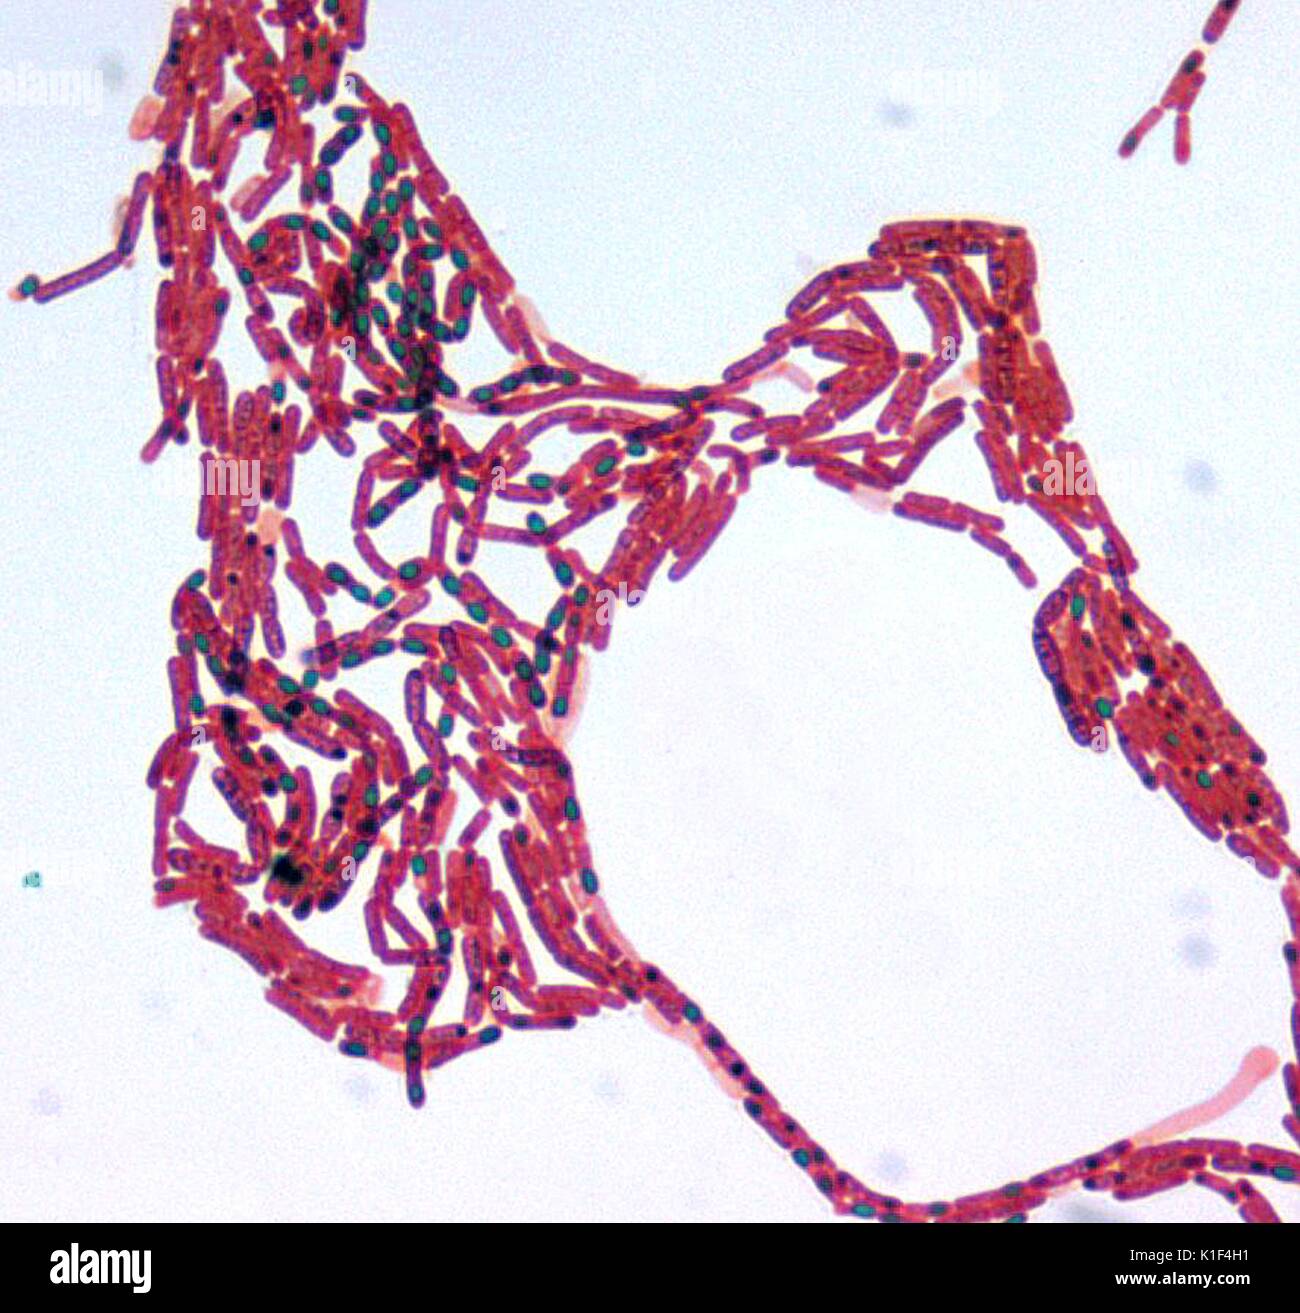 Bacillus sp. Malachite Verde macchia di spore, ad un ingrandimento 1000x. Immagine cortesia CDC/cortesia di Larry Stauffer, Oregon State Public Health Laboratory, 2002. Foto Stock